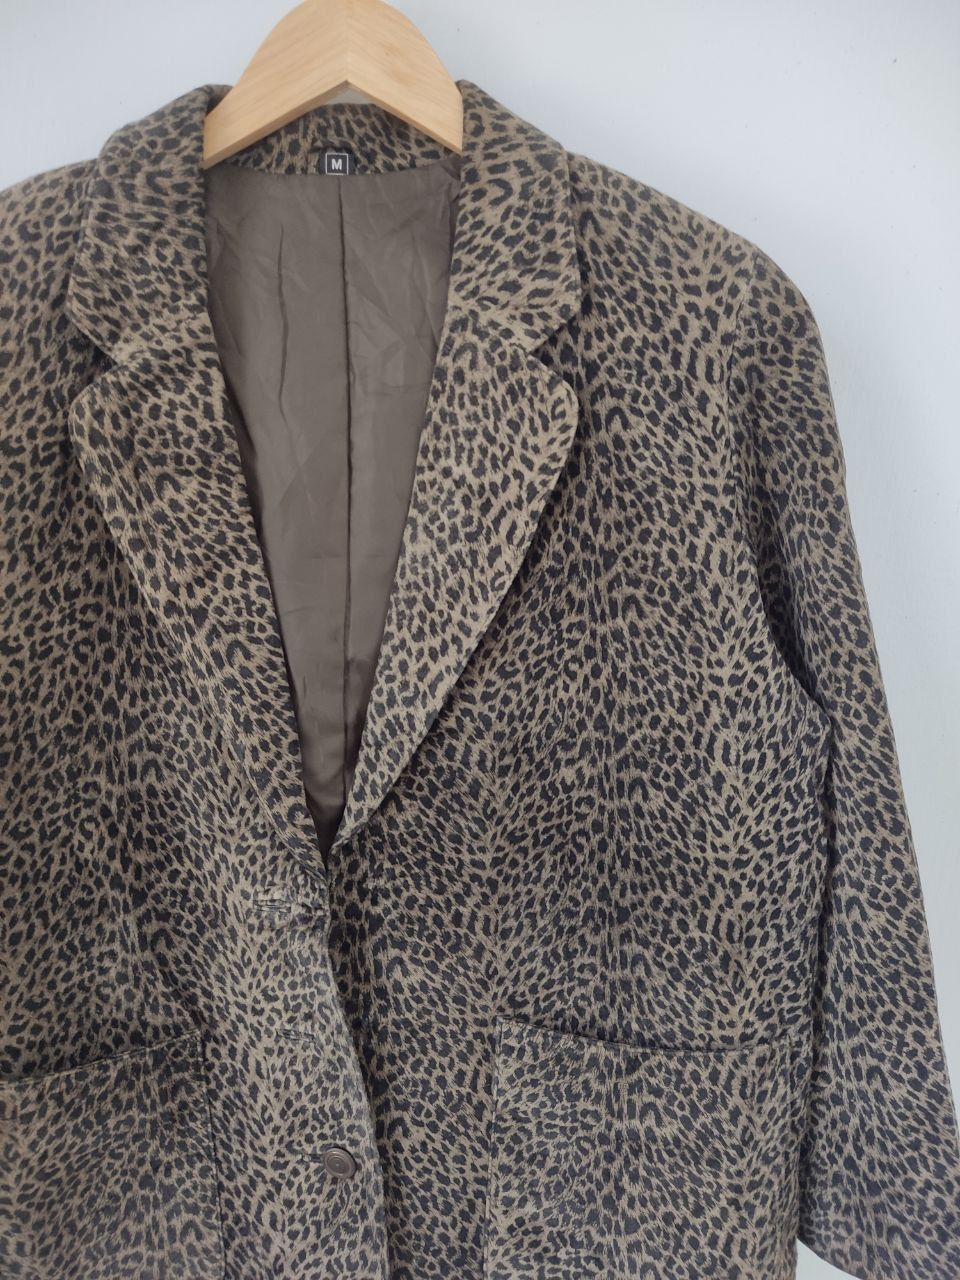 Vintage 70s Partina Tokyo Fur Leopard Graphic Wool Blazer - 5